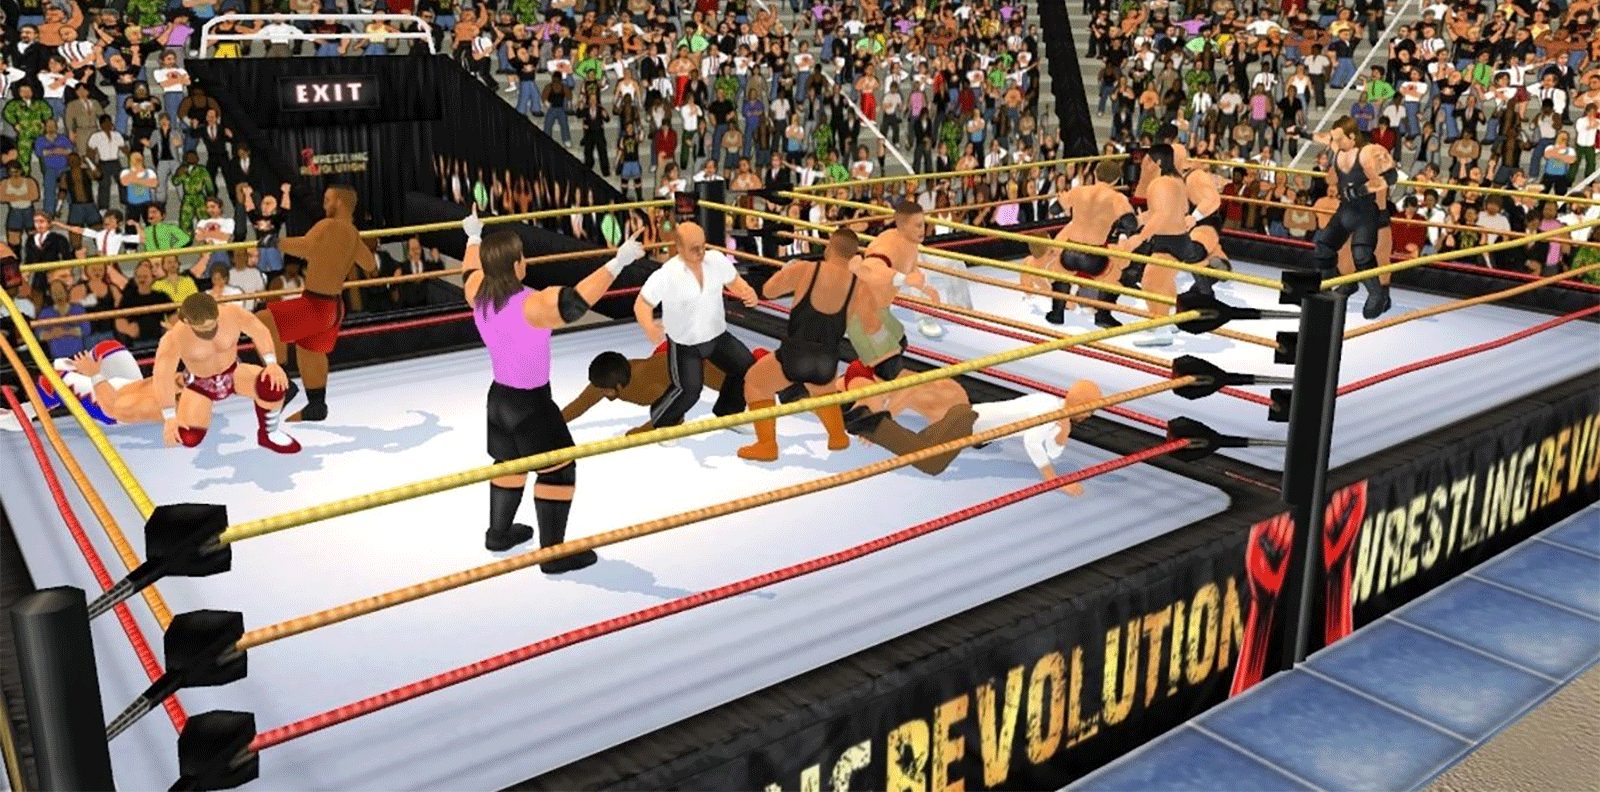 wrestling revolution 3d mod apk